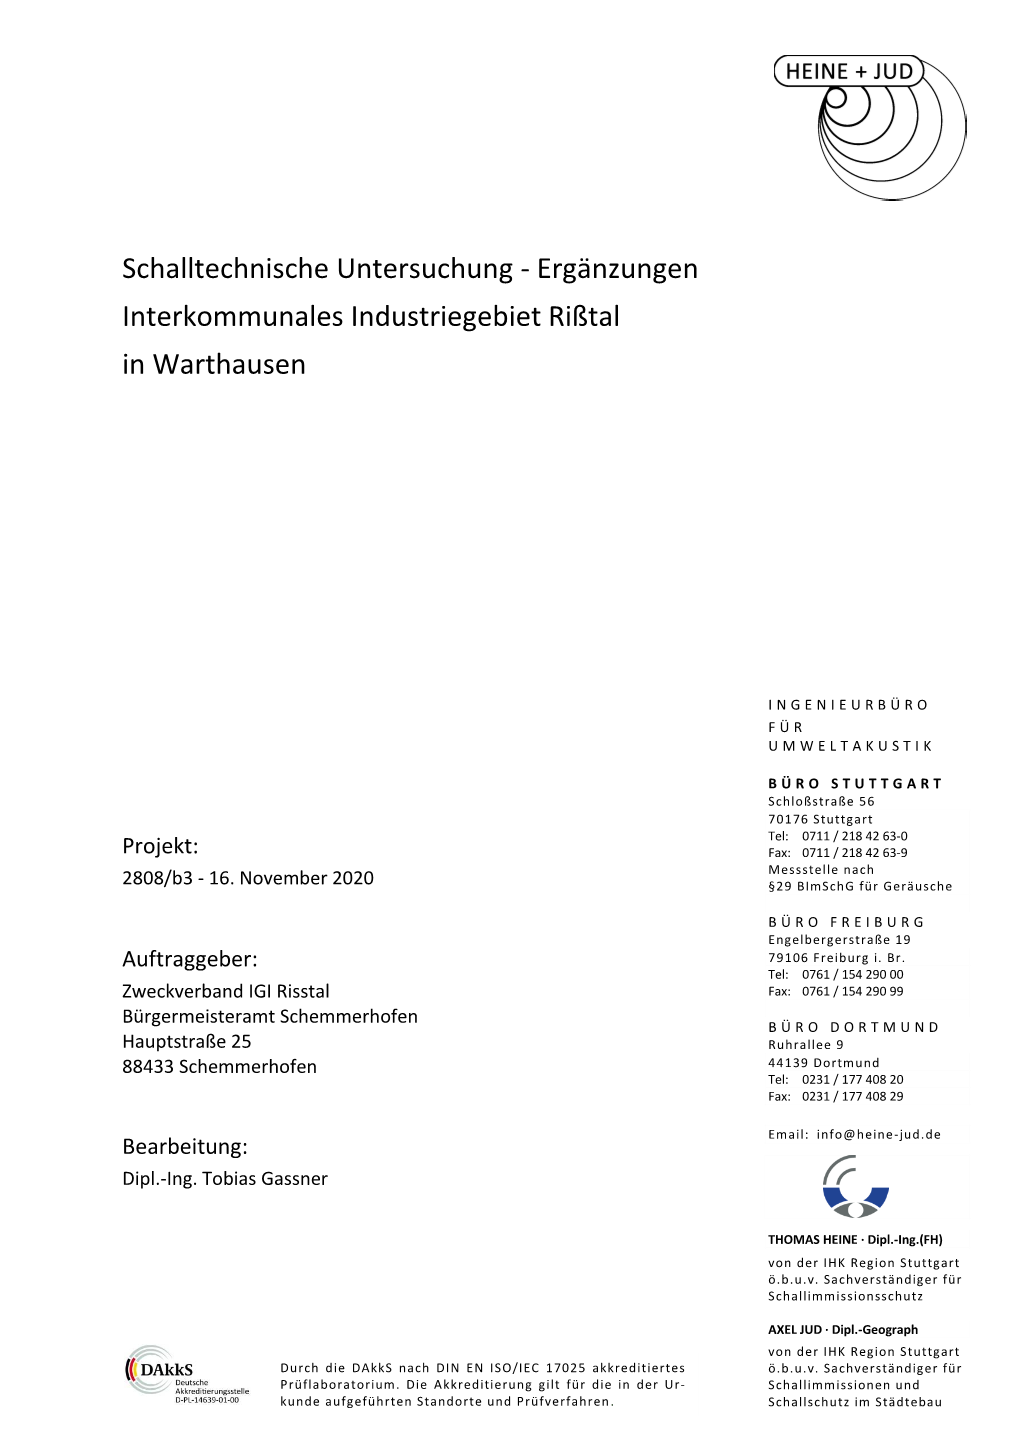 Schalltechnische Untersuchung - Ergänzungen Interkommunales Industriegebiet Rißtal in Warthausen